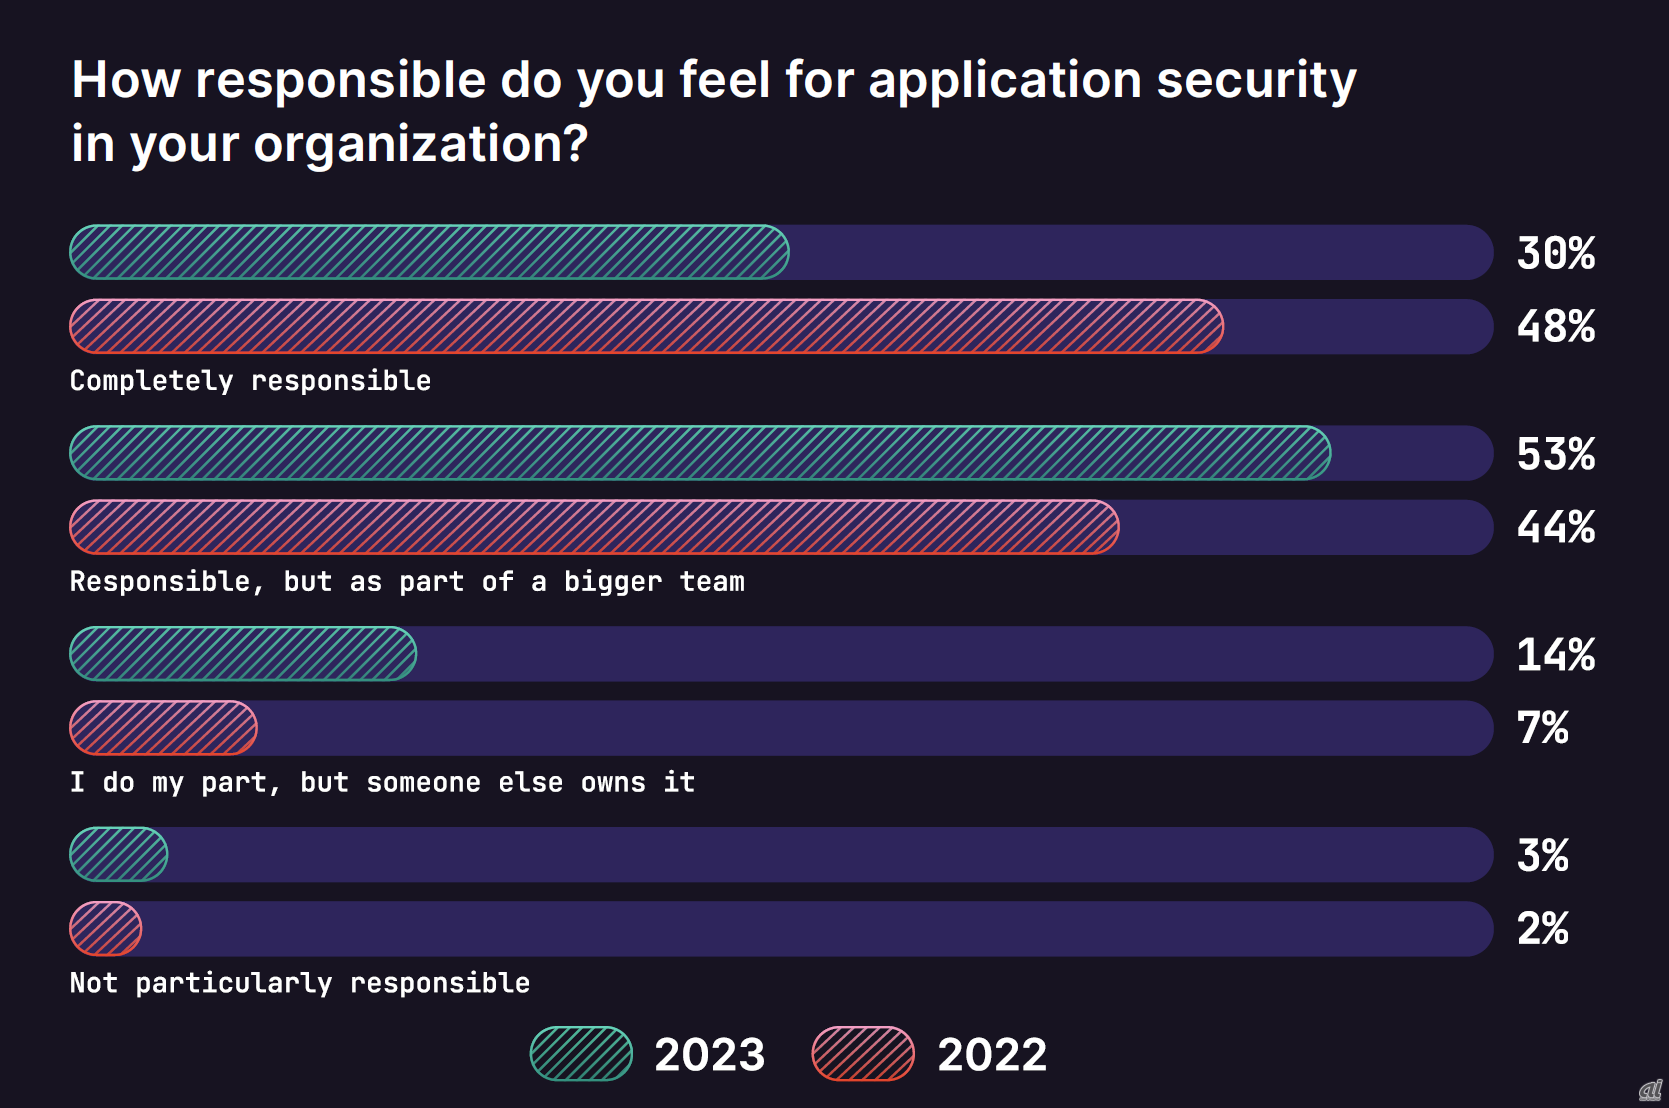 「組織のアプリケーションセキュリティにどのくらい責任を感じているか？」という設問への回答